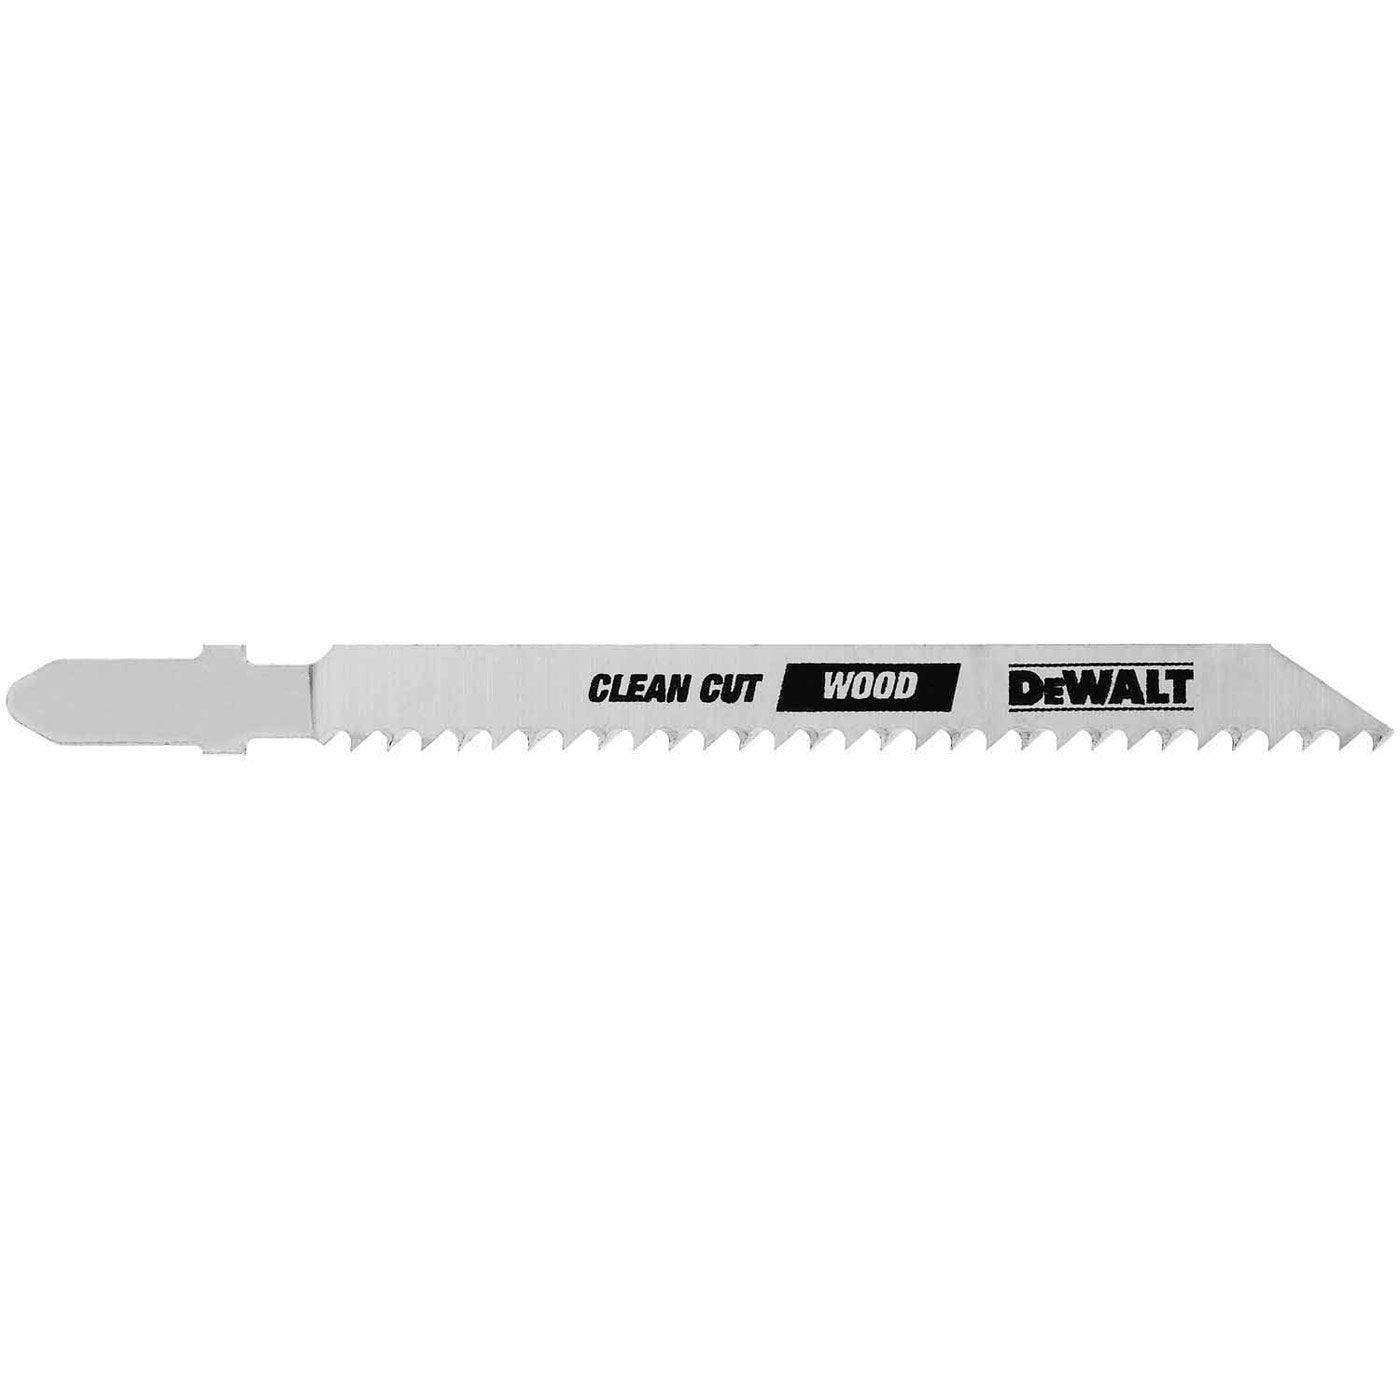 DeWalt DW3760-5 4" 10 TPI T-Shank Cobalt Steel Jig Saw Blade (5 pack)